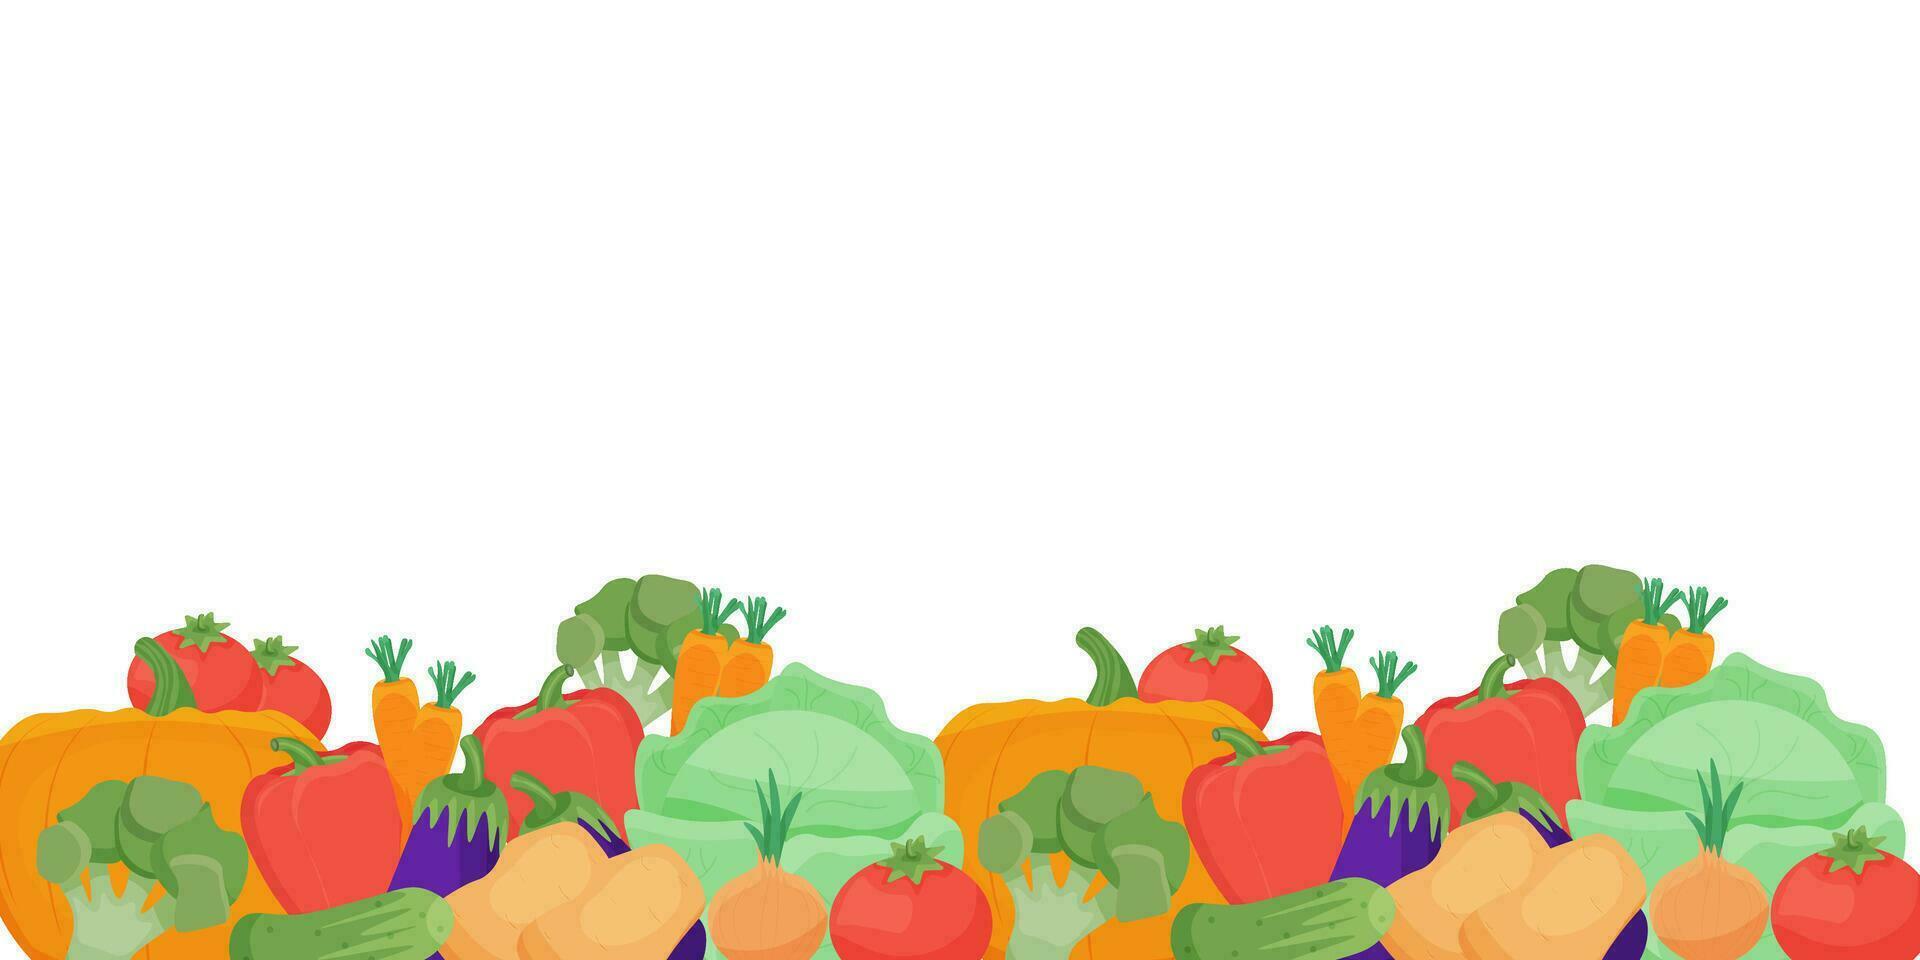 grens van vers groenten en kruiden. poster met gezond biologisch boerderij voedsel. rijp groenten van de zomer en herfst seizoenen. vlak vector illustratie. herfst oogst Aan een wit achtergrond.